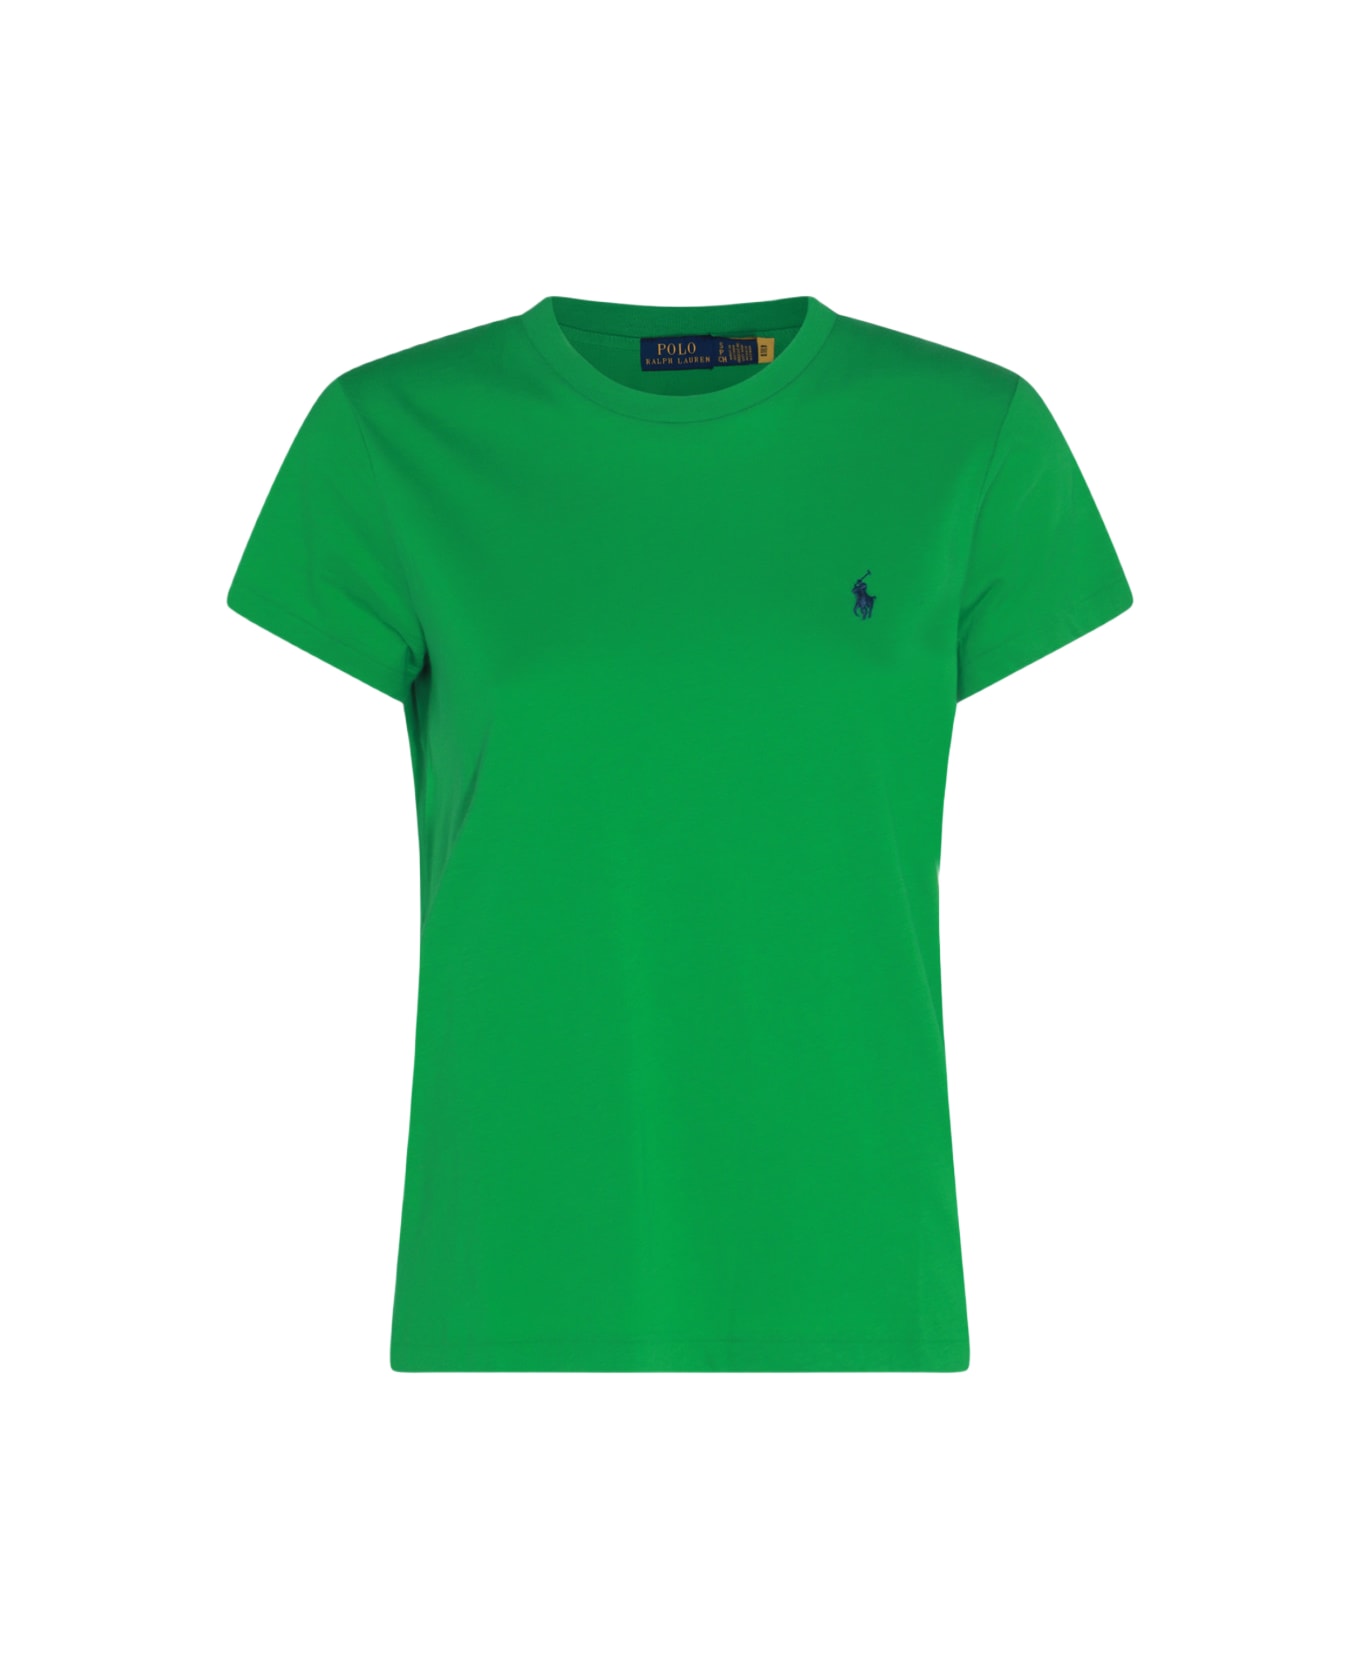 Polo Ralph Lauren Pony T-shirt - Green